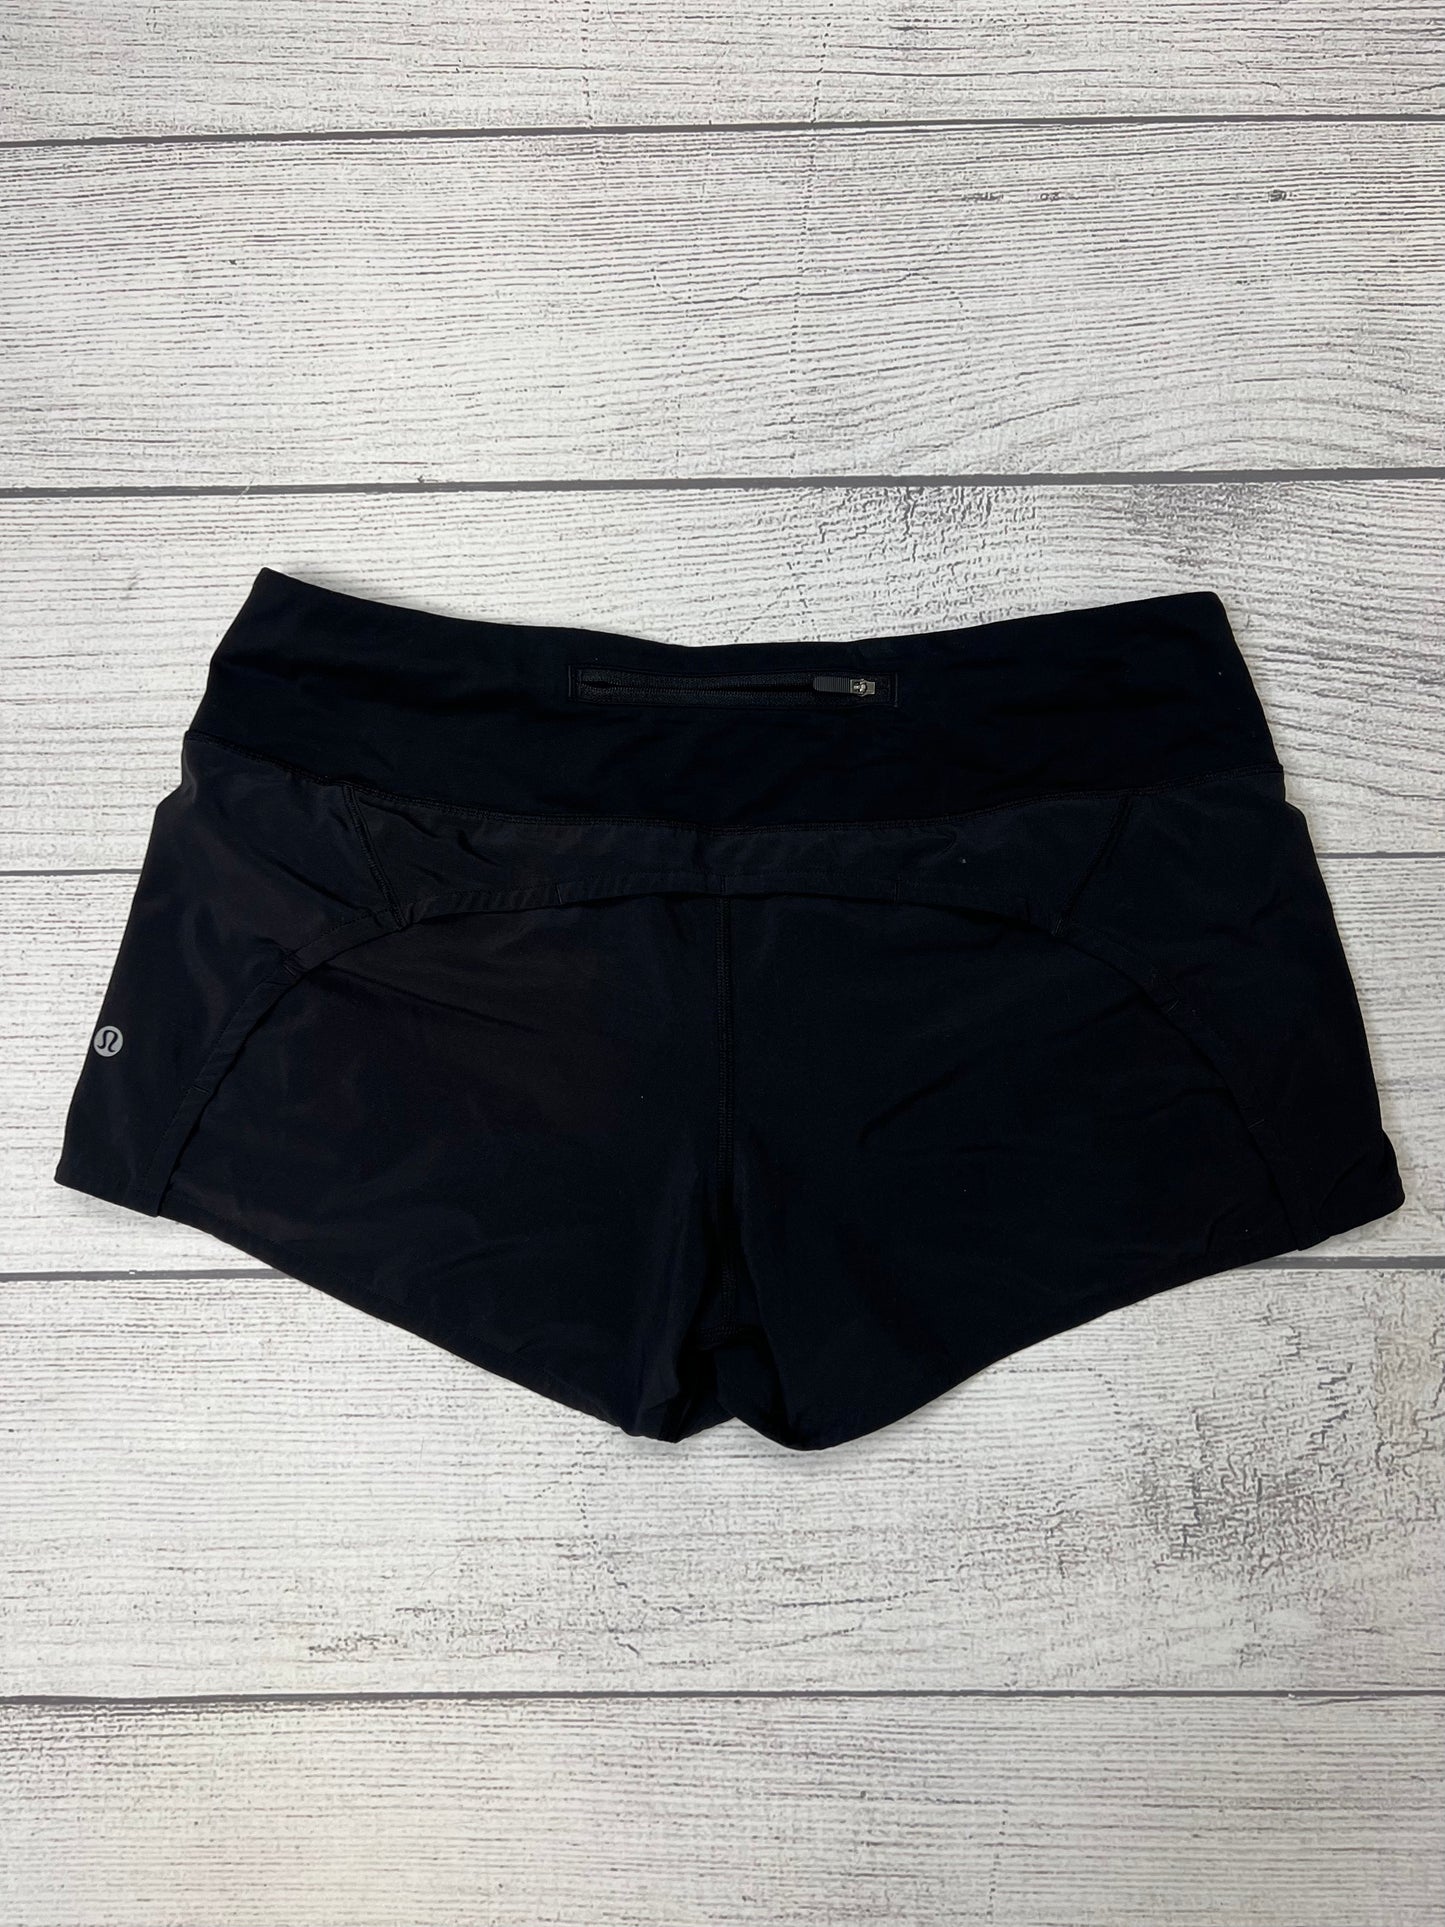 Black Athletic Shorts Lululemon, Size M